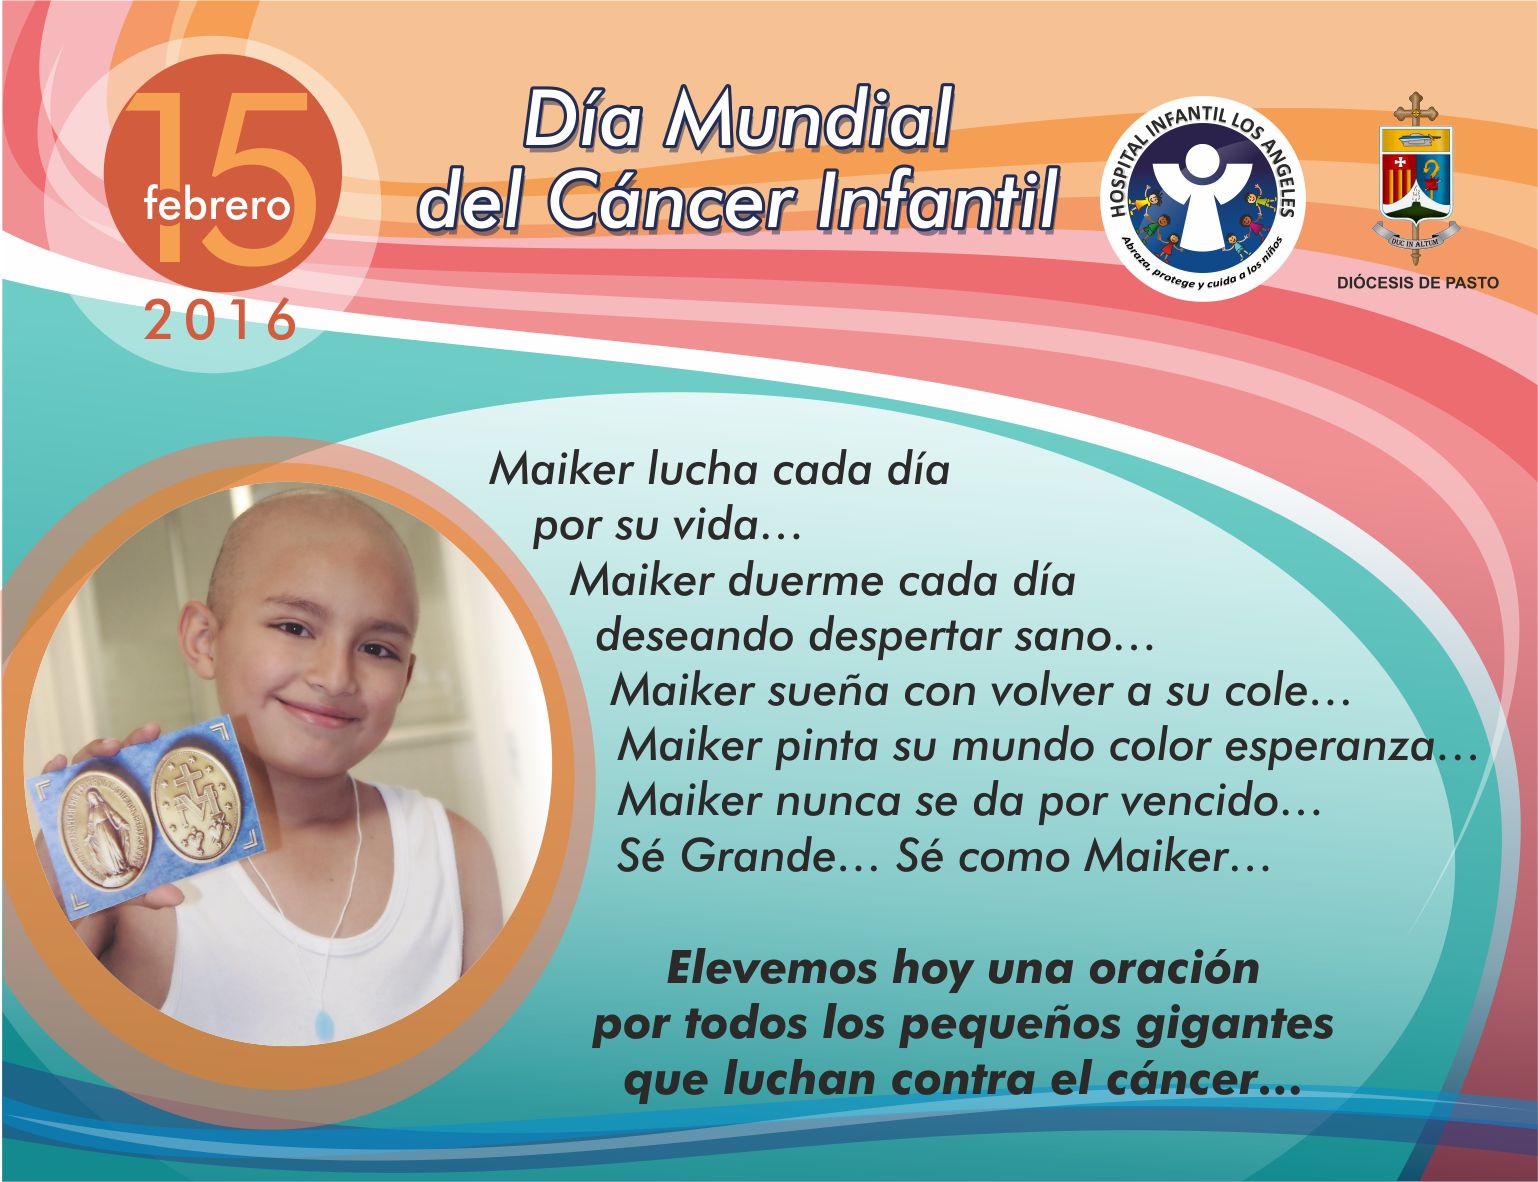 Día Mundial Lucha contra el Cancer Infantil